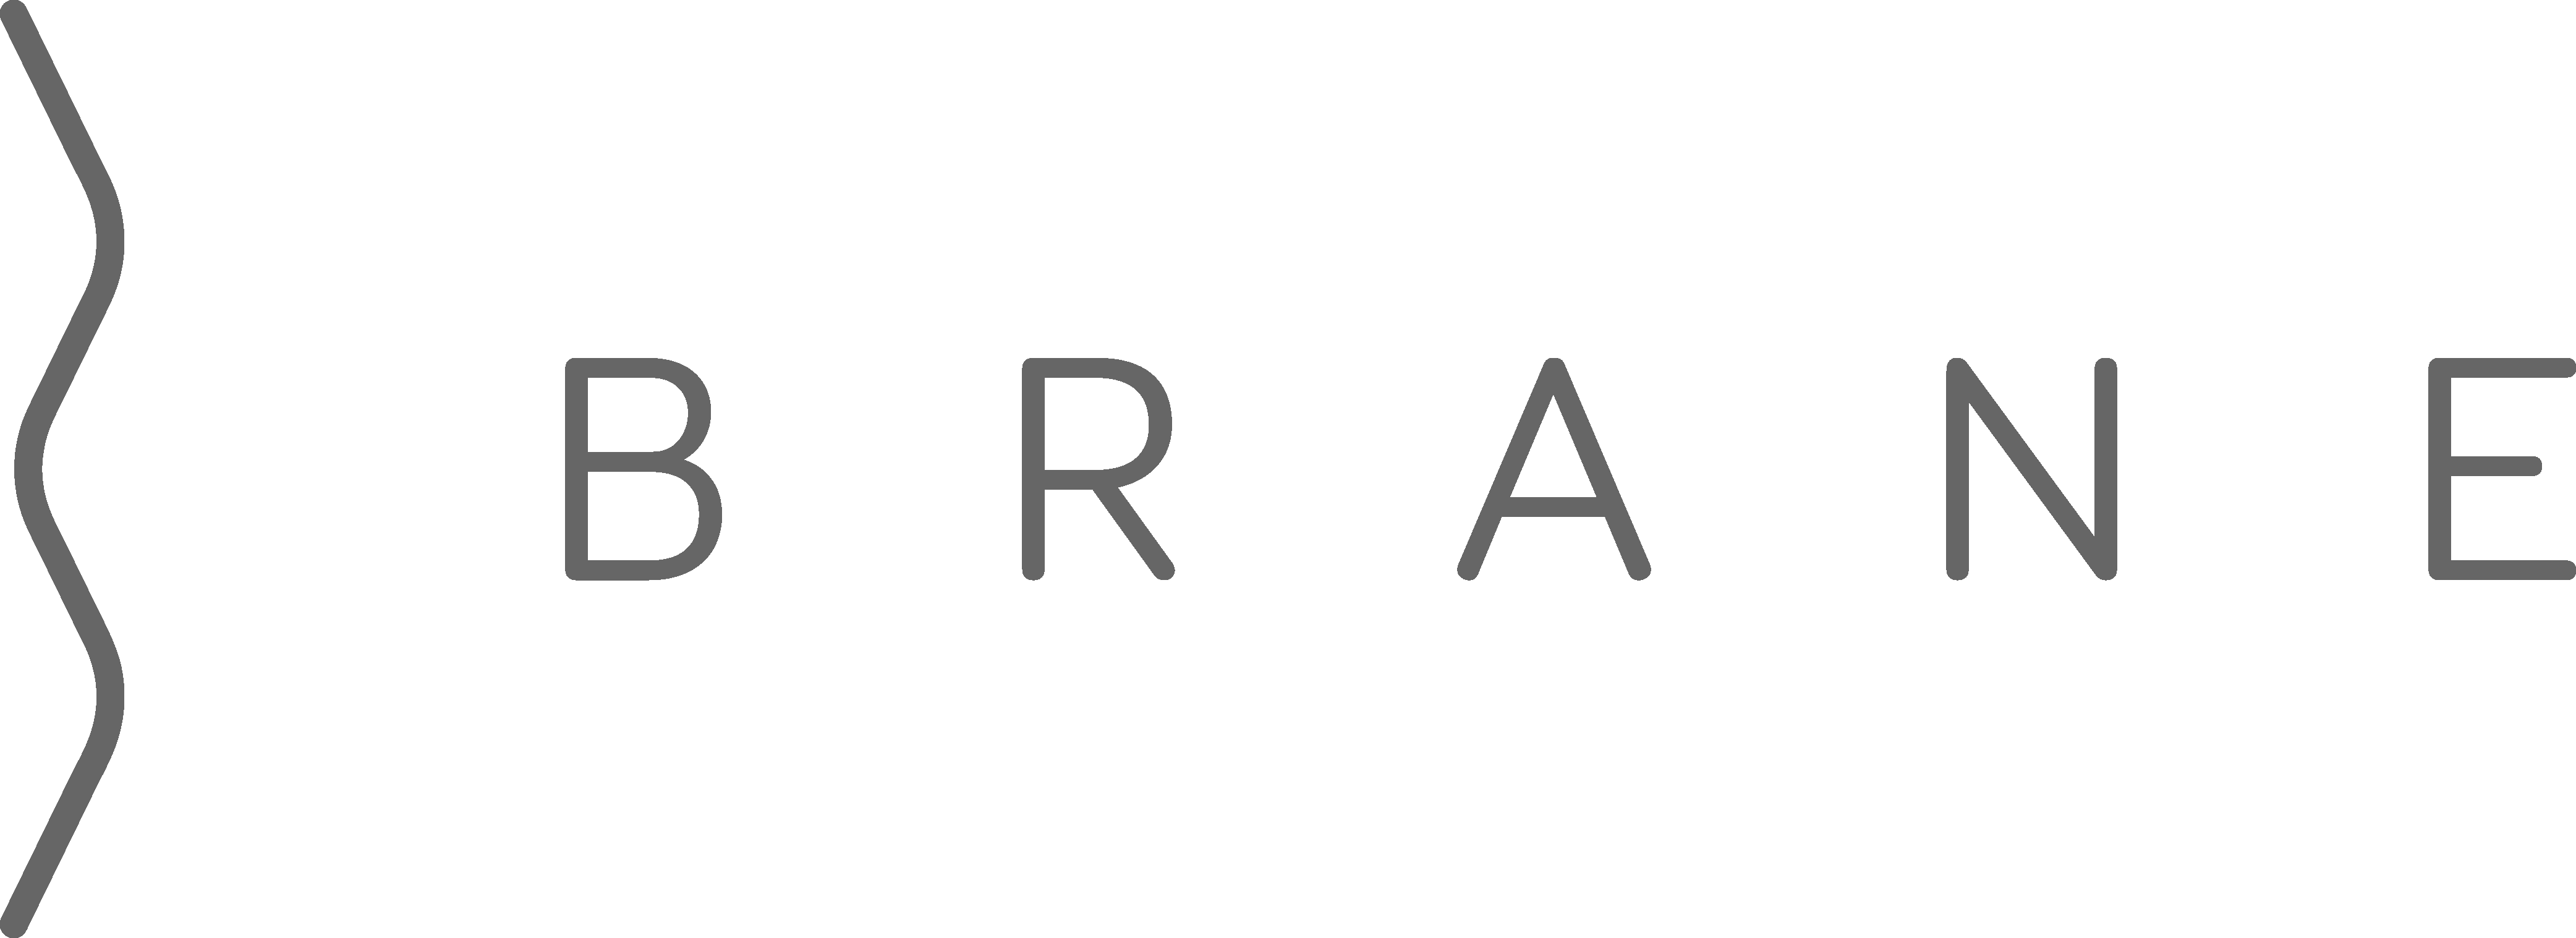 The Brane logo in gray.